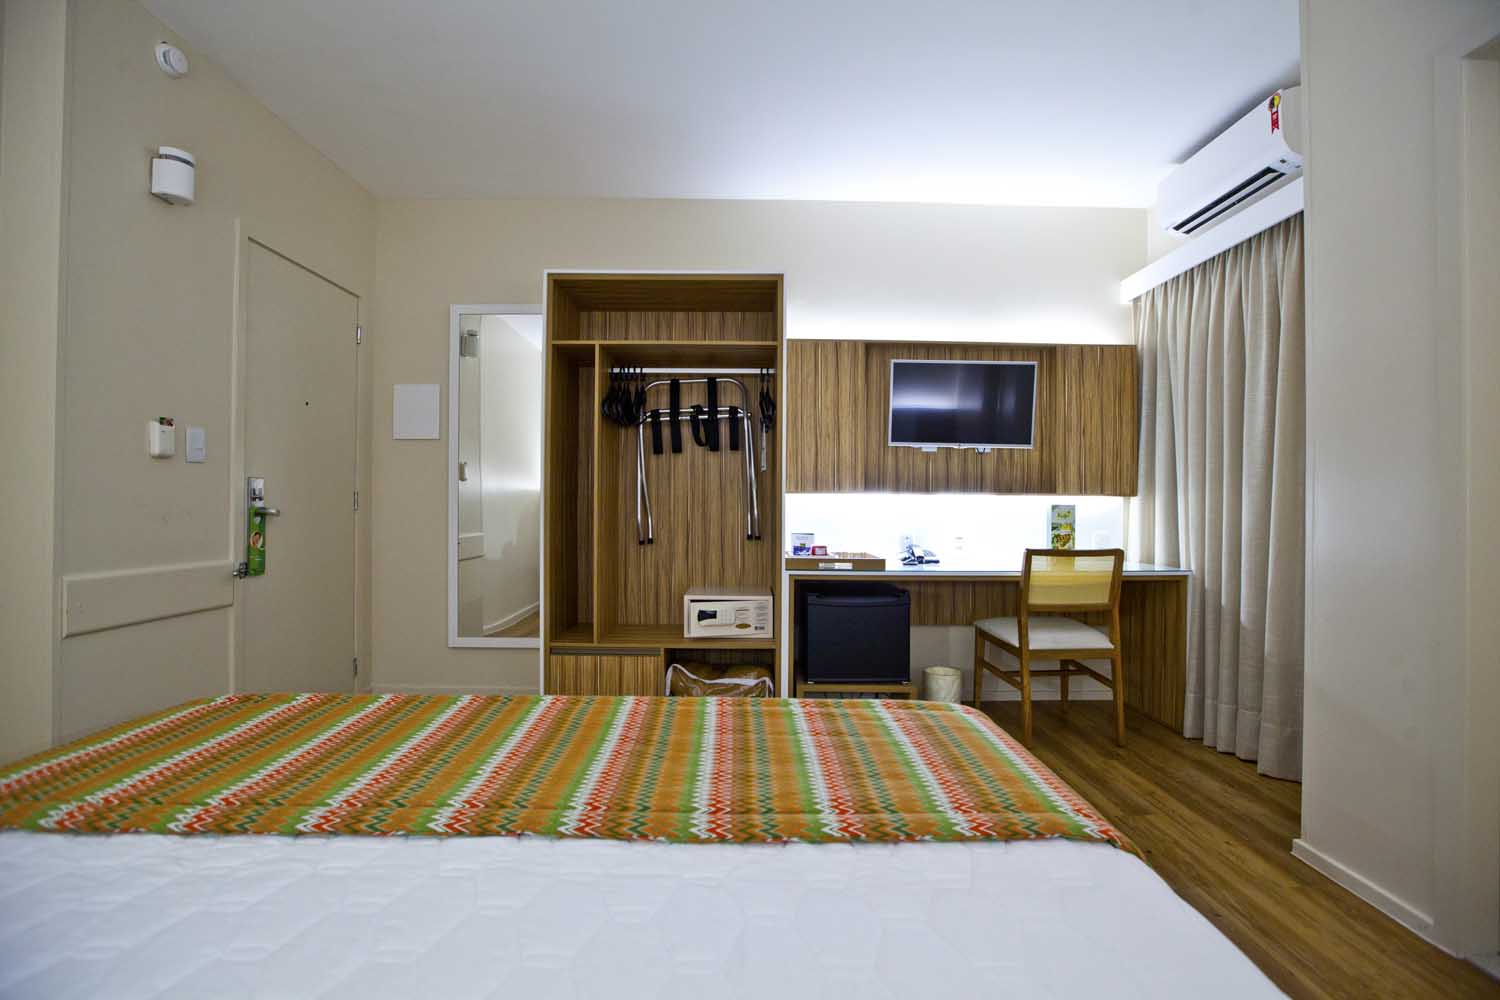 Hotel Quality Aracaju, fotos Márcio Dantas, Hotéis em Aracaju, Quality Hotel, Lugar Perfeito, Sergipe